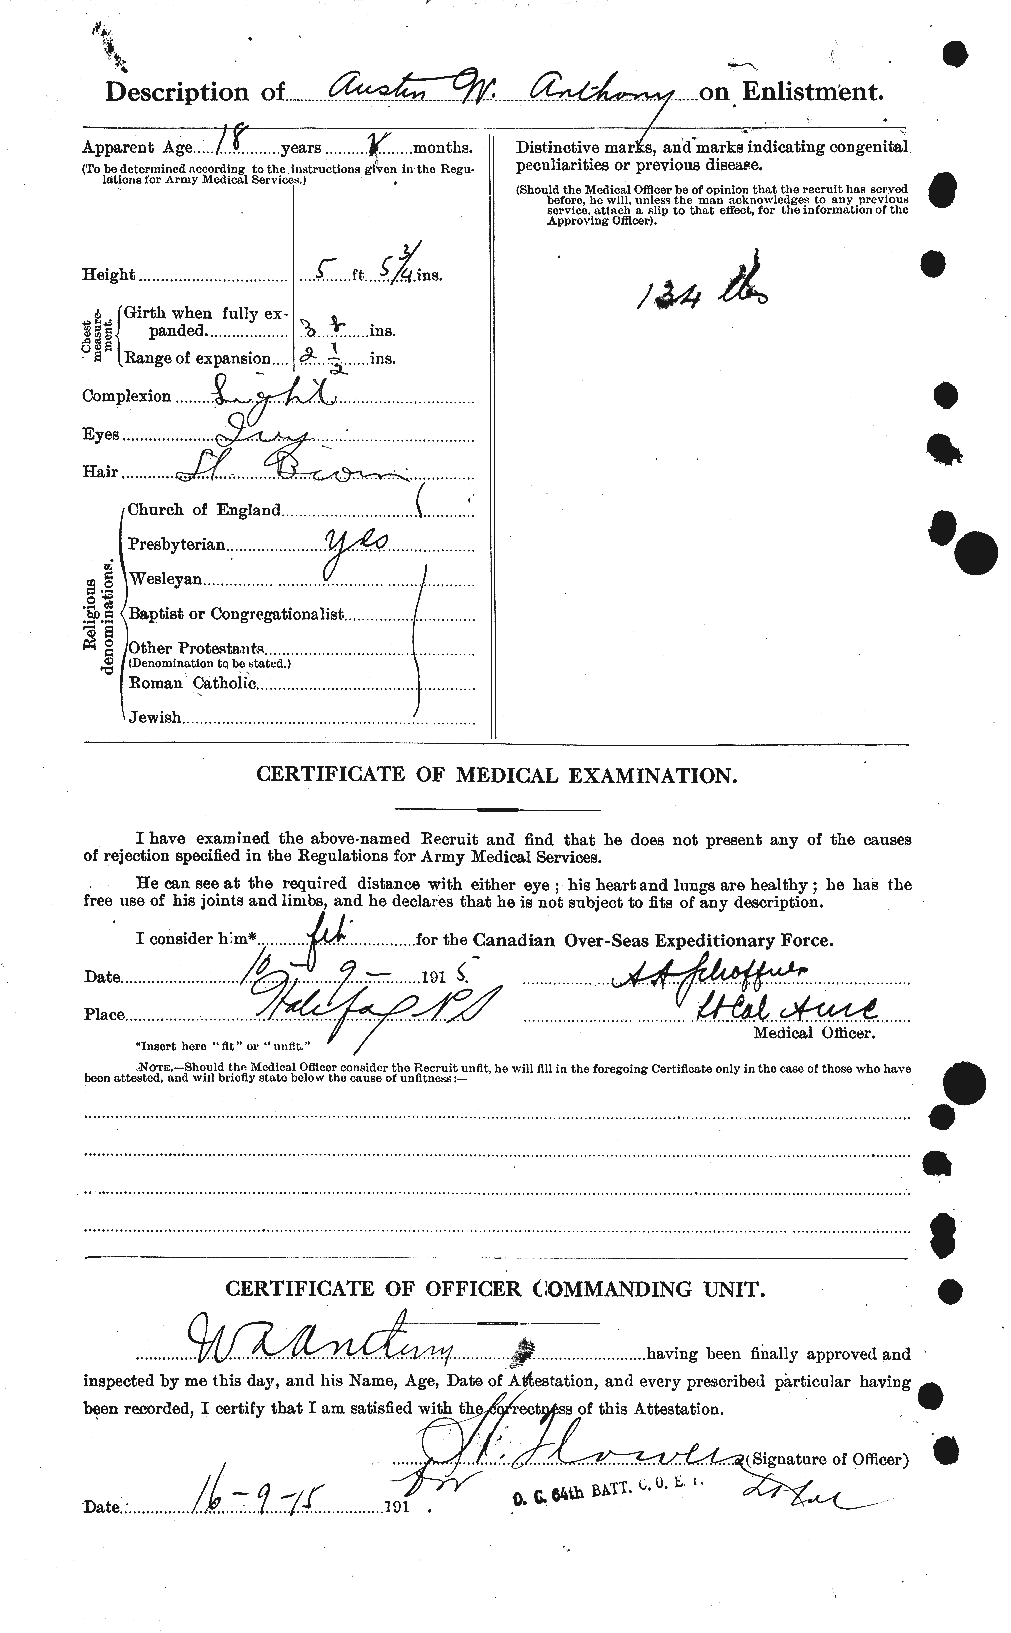 Dossiers du Personnel de la Première Guerre mondiale - CEC 212236b